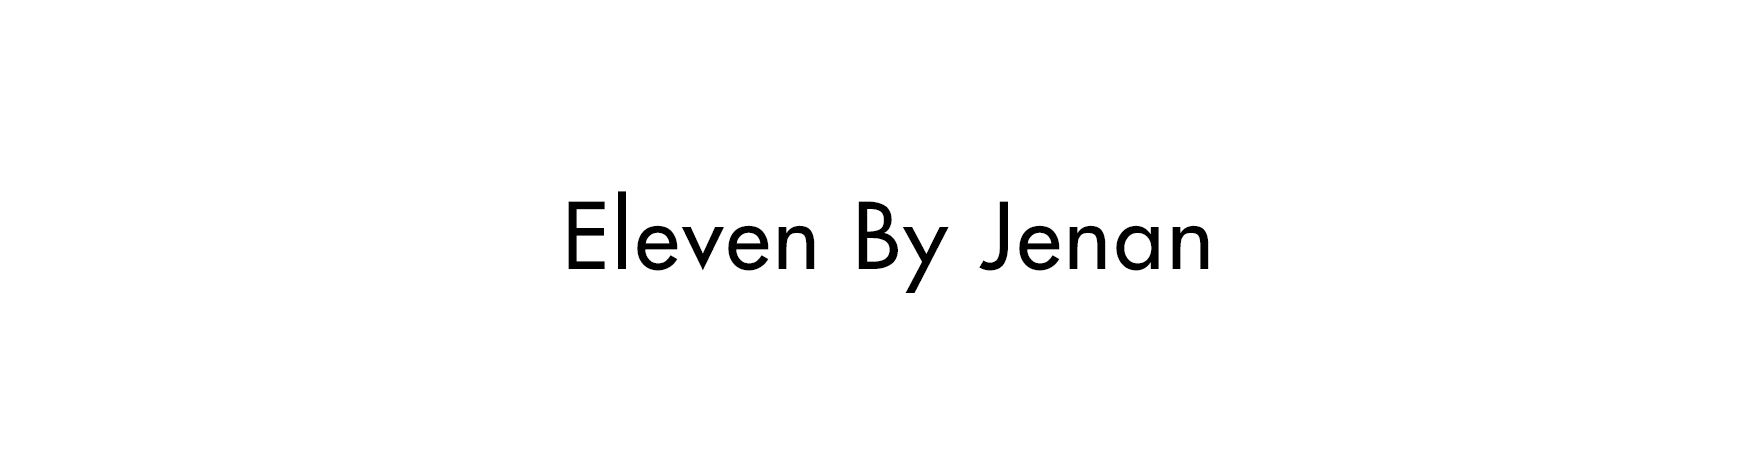 Eleven by Jenan